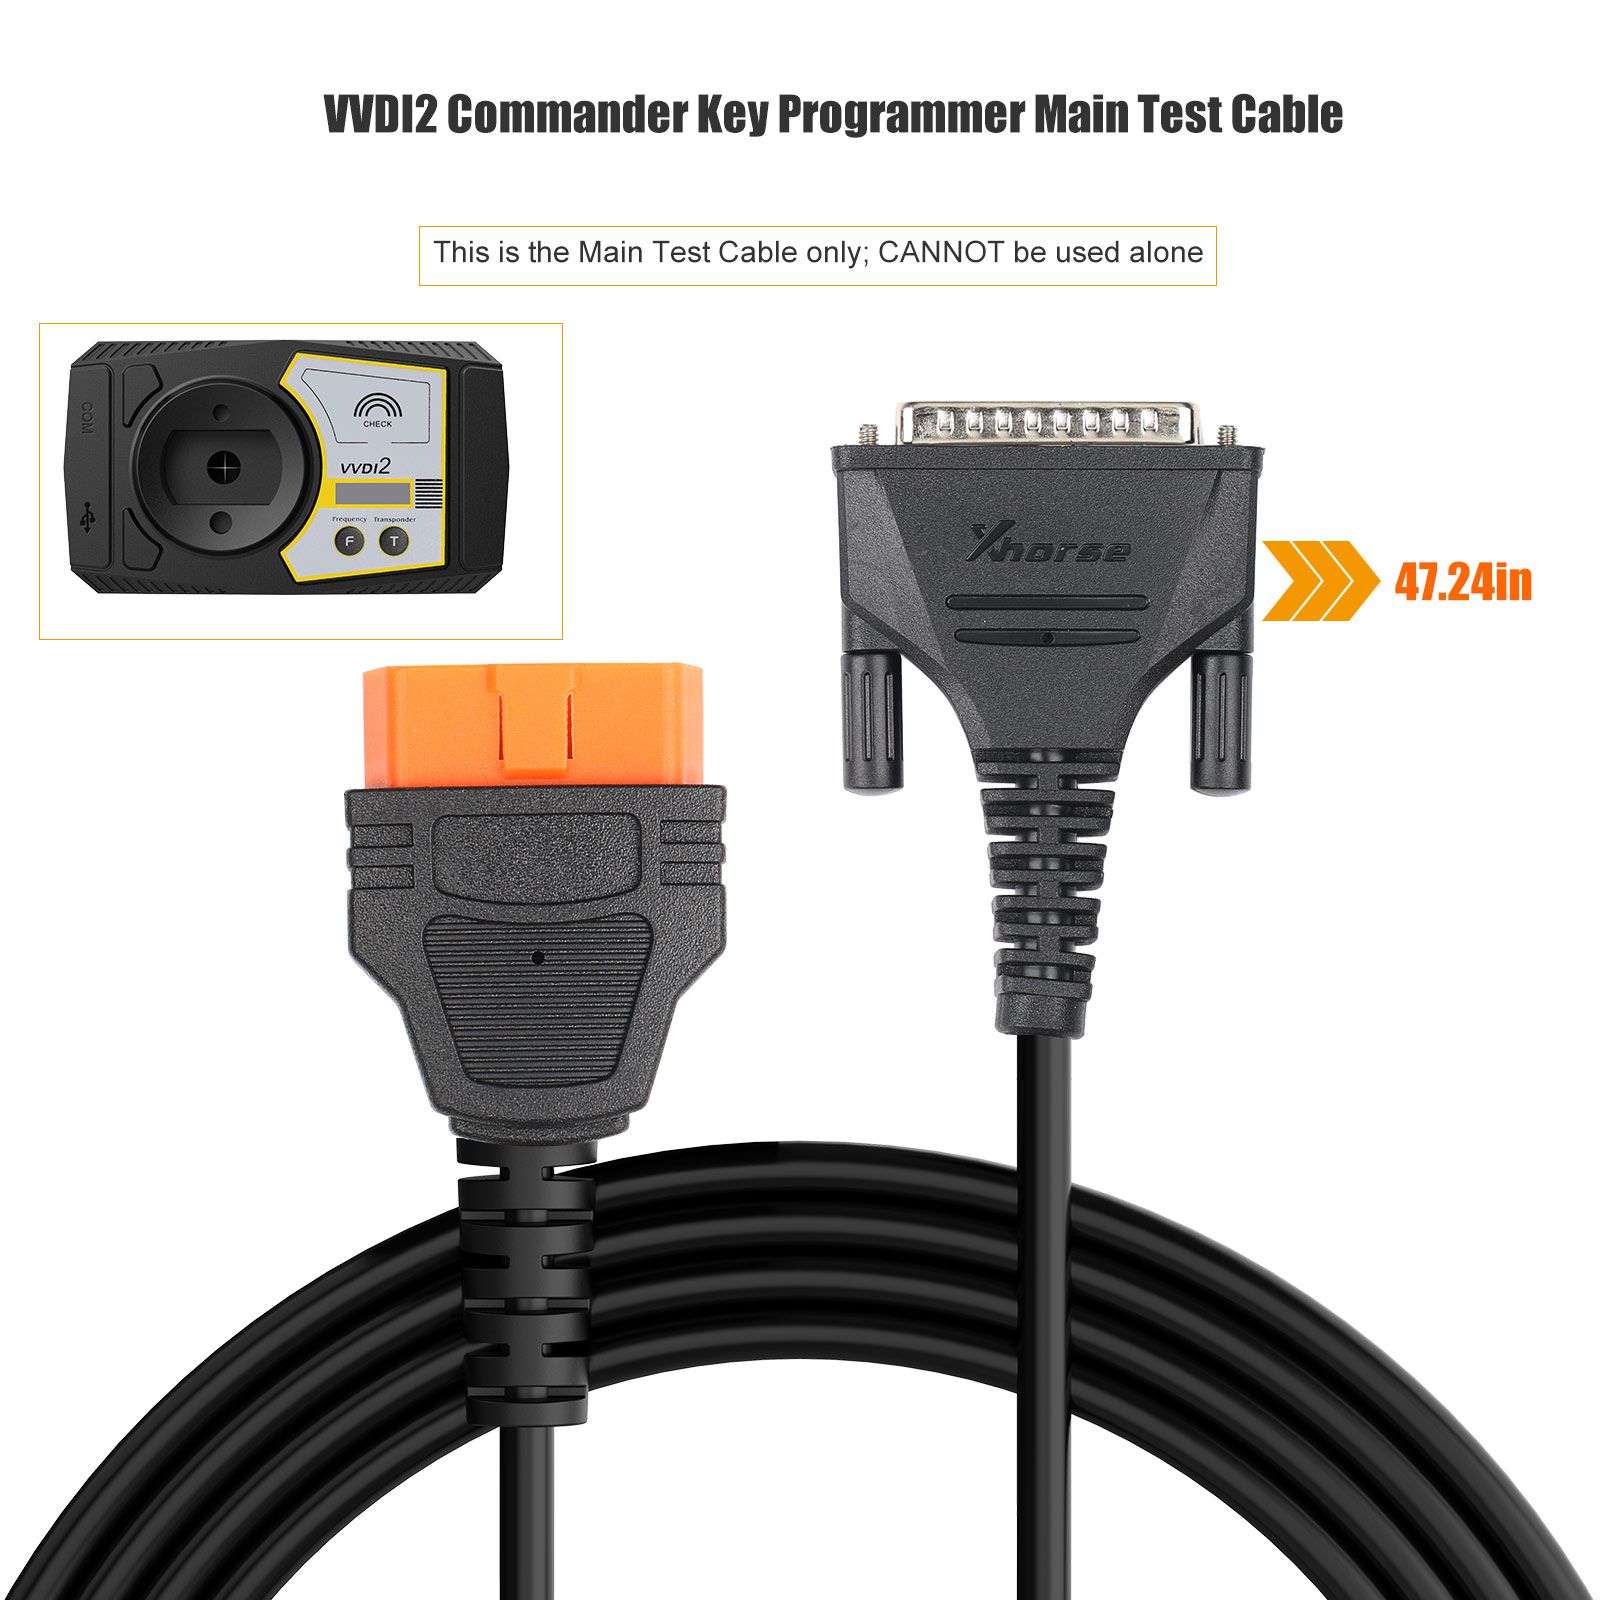 Cable de prueba principal xhorse vvdi2 para programadores clave del Comandante vvdi 2